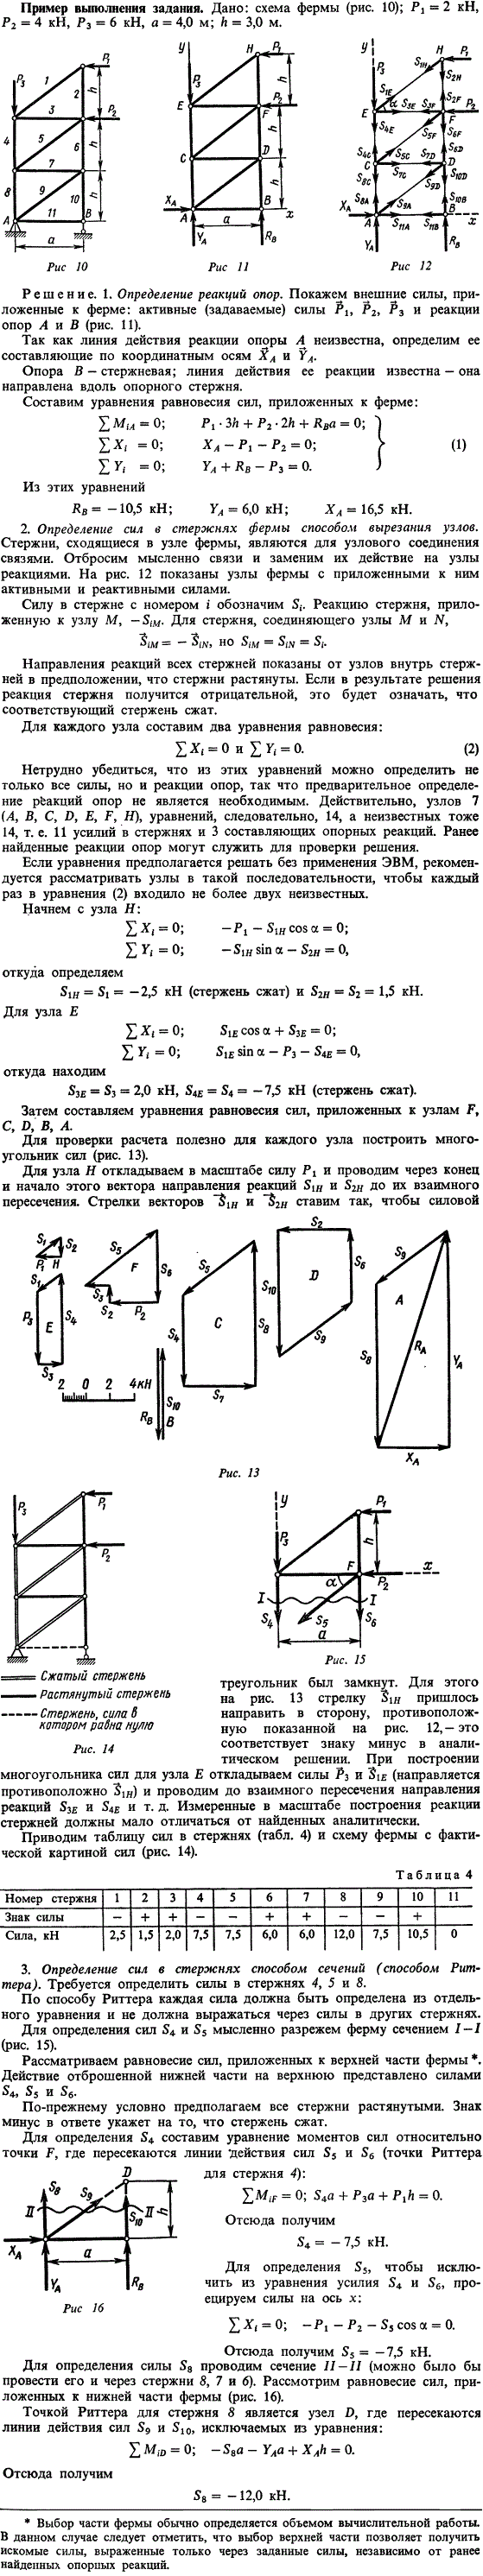 Дана схема фермы P1=2 кН, P2=4 кН, P3=6 кН, a=4 м, h=3 м. Определить реакции опор фермы от заданной ..., Задача 14032, Теоретическая механика